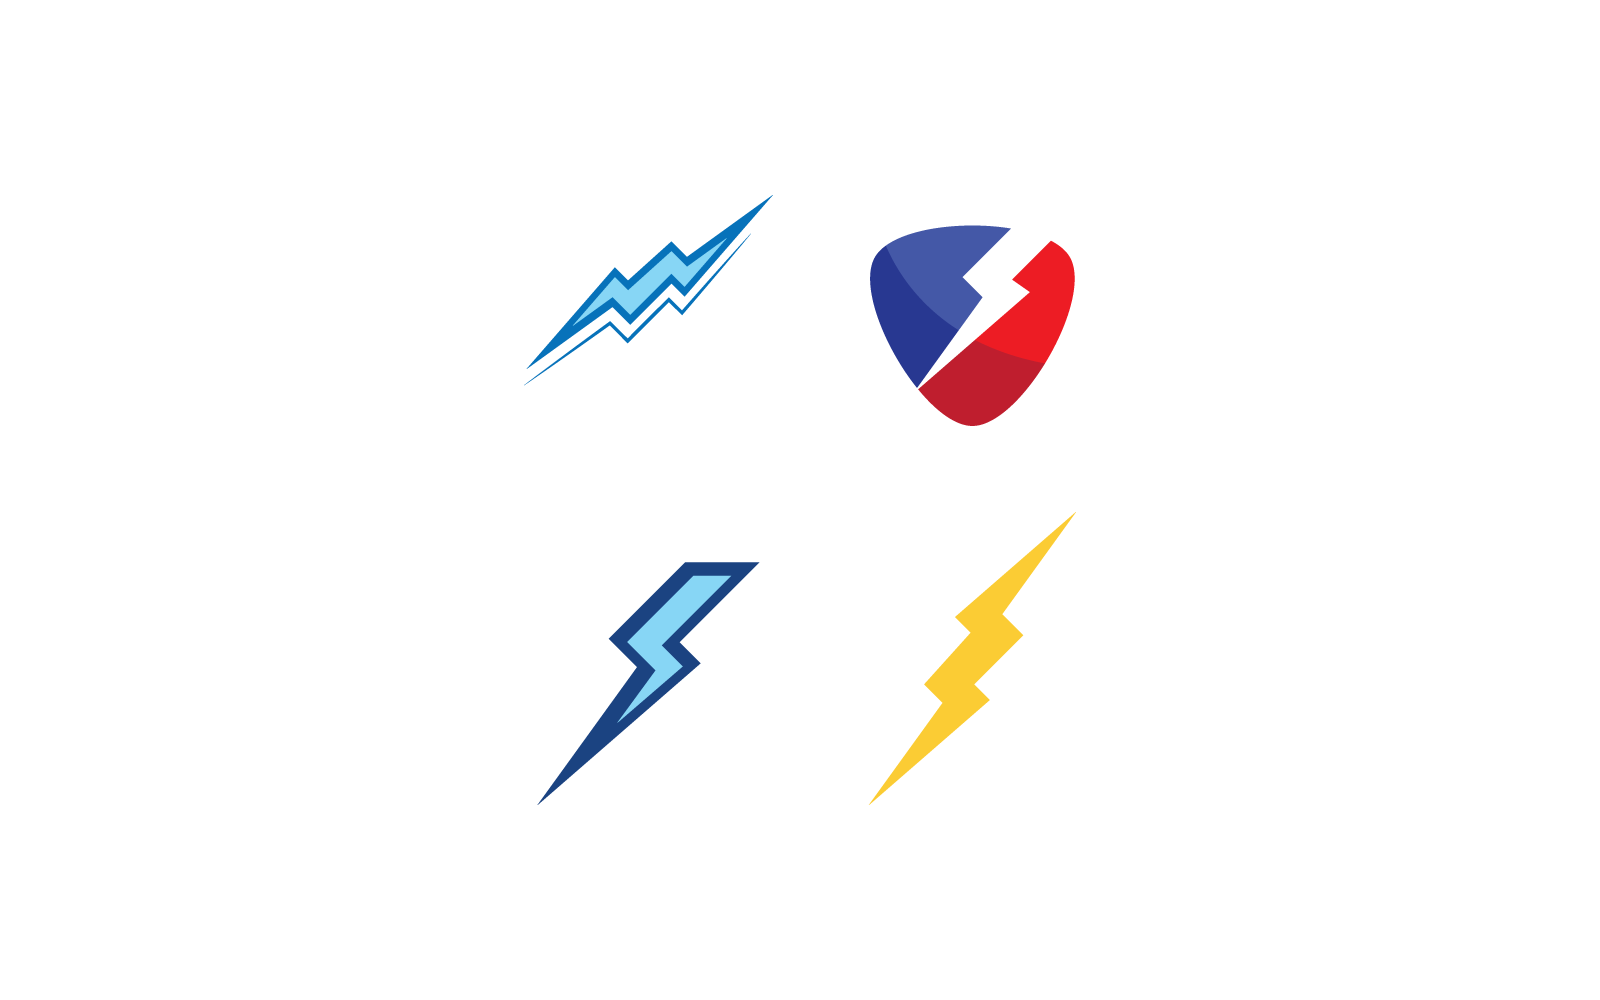 Power lightning power energy icon vector logo illustration